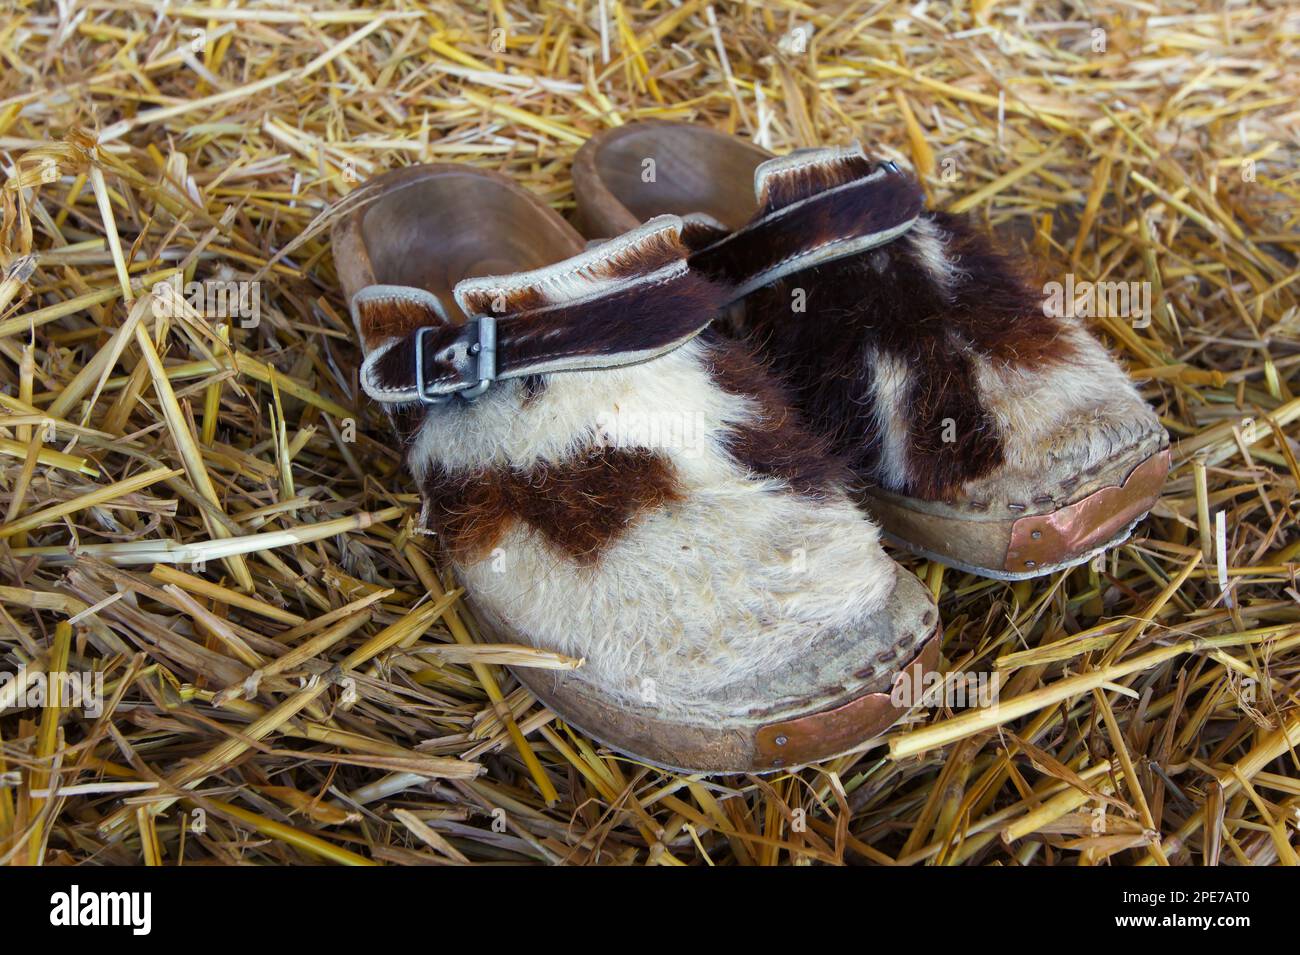 Chaussures traditionnelles d'un agriculteur allemand en fourrure de vache Banque D'Images